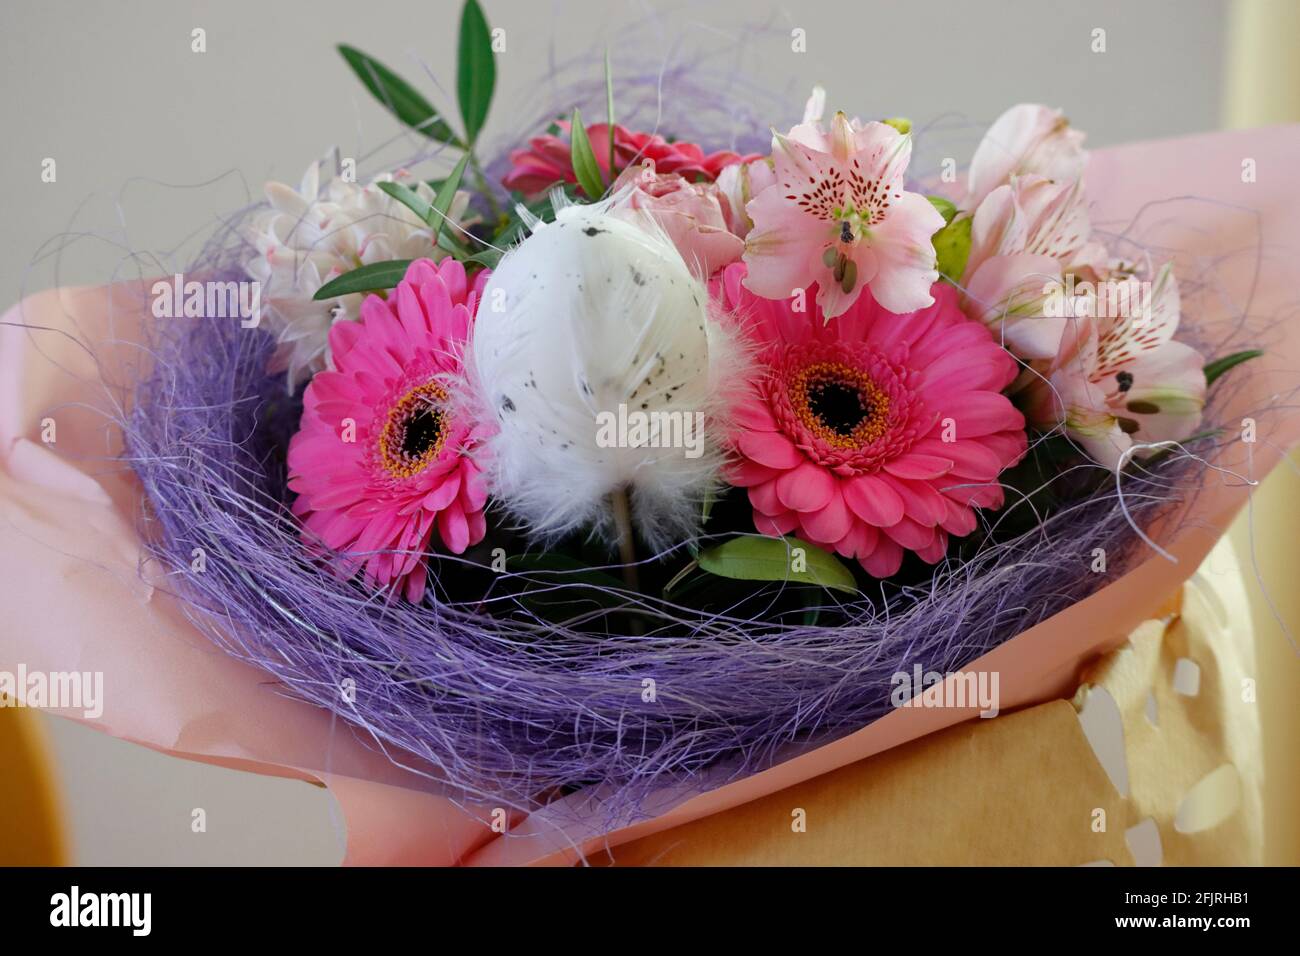 Un petit joli bouquet de fleurs en blanc, violet et rose pour Pâques Banque D'Images